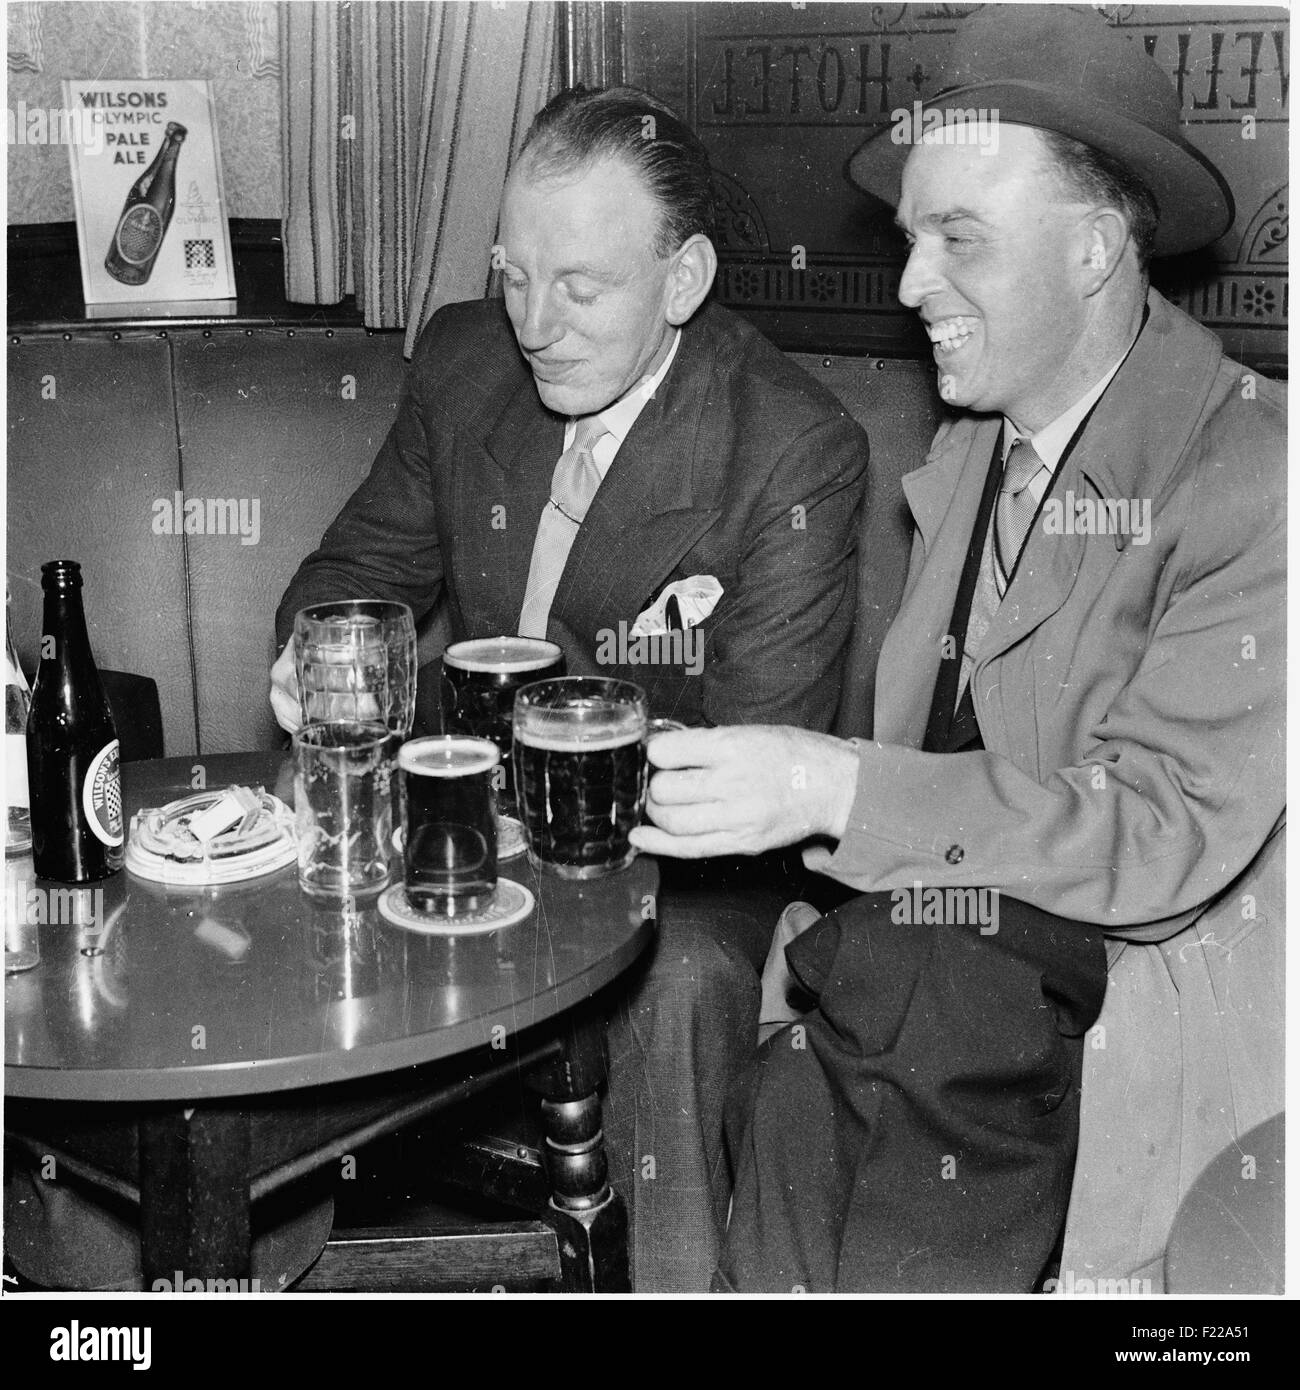 Geschichtsbild aus den 1950er Jahren, zwei Männer geeignet, eins mit einem Regenmantel und trägt einen Hut, sitzen zusammen in einem Pub genießen Sie mehrere Gläser und Flaschen von Wilsons pale Ale, Manchester, UK. Stockfoto